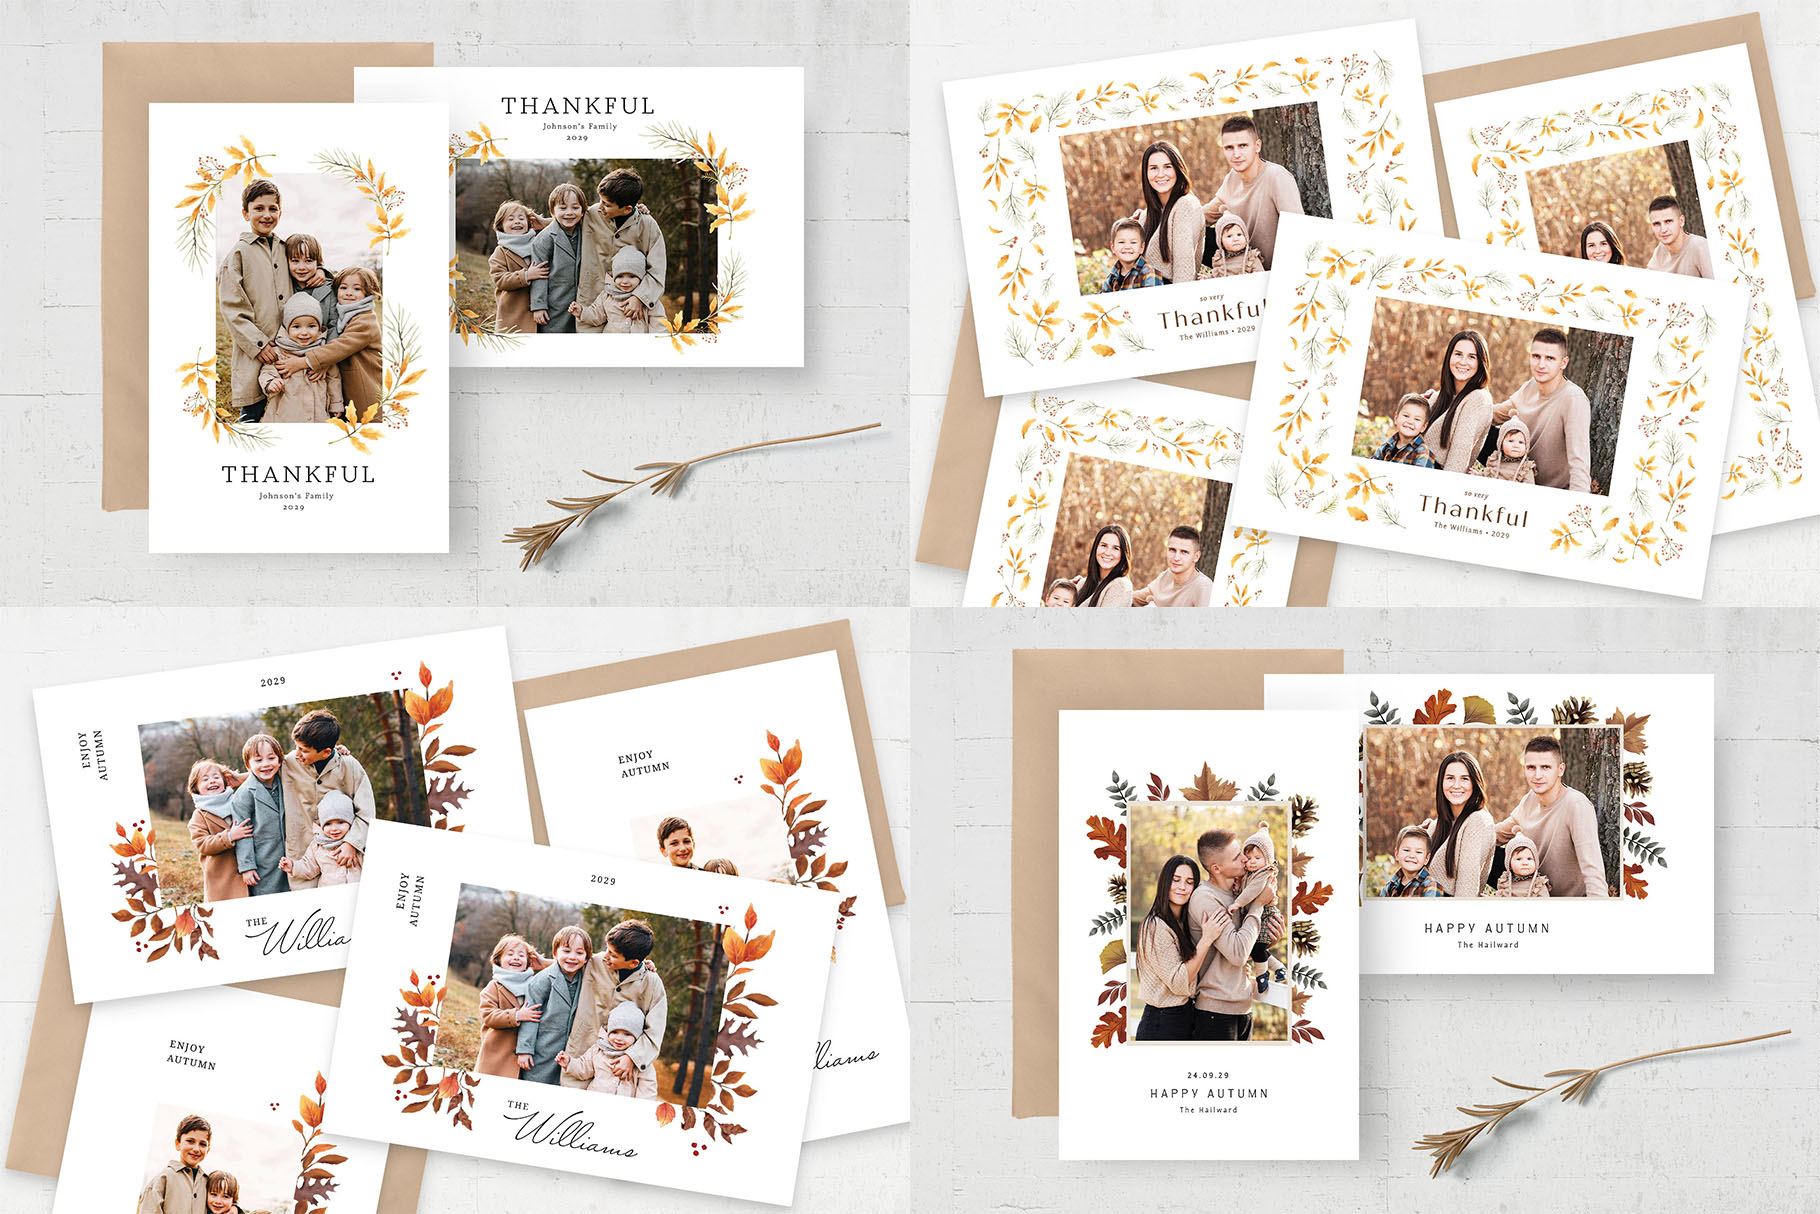 Autumn Fall Photo Card Templates Bundle (PSD Format)